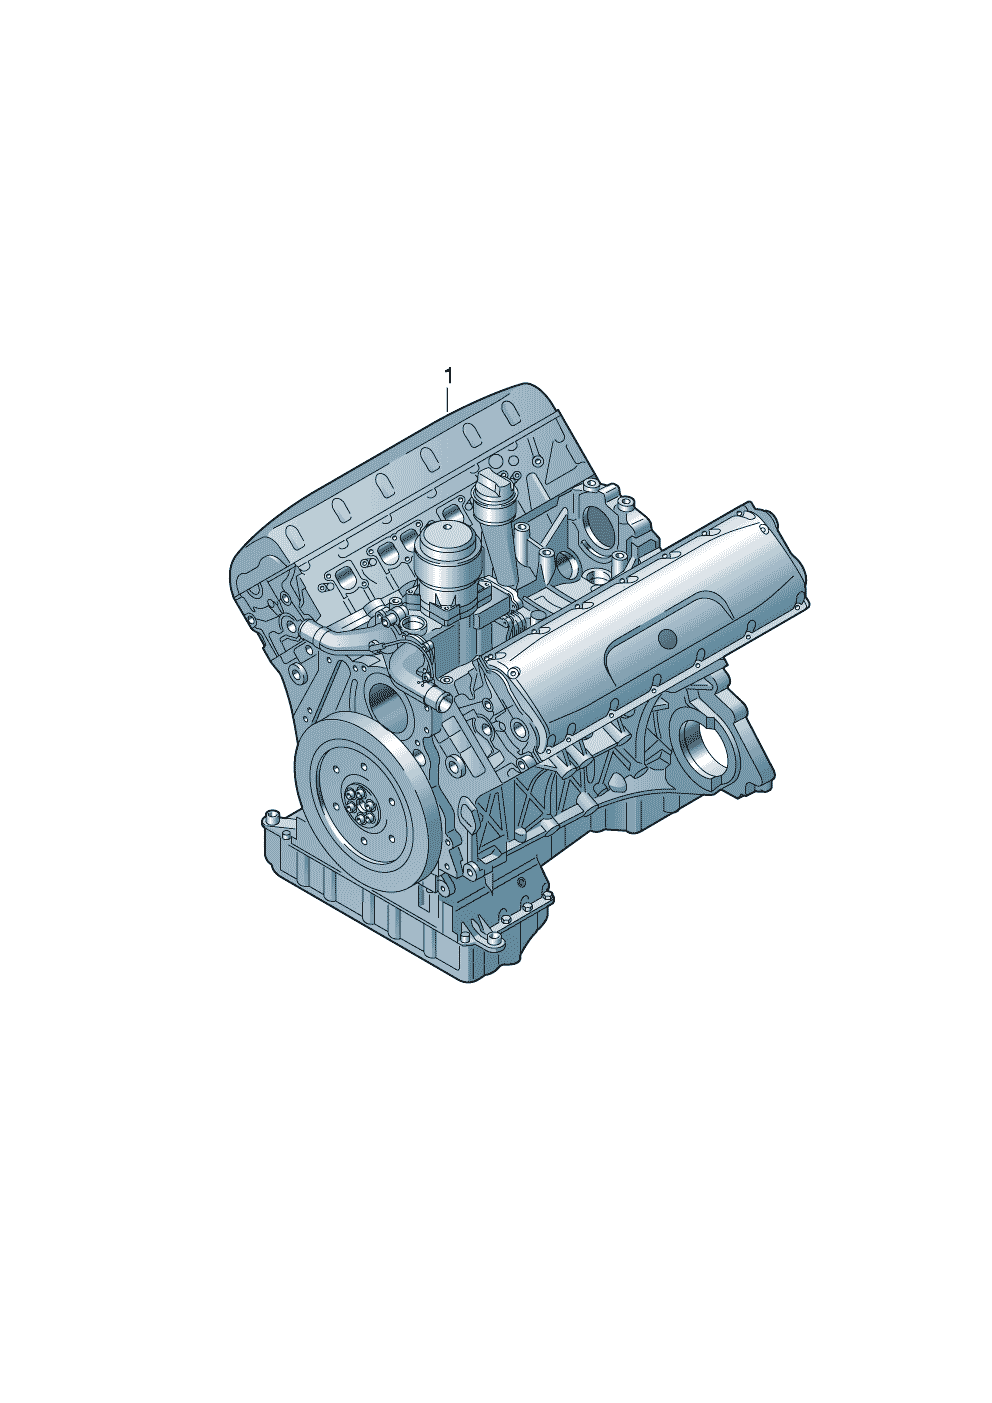 Base engine 5.2Ltr. - Audi R8/Spyder - r8